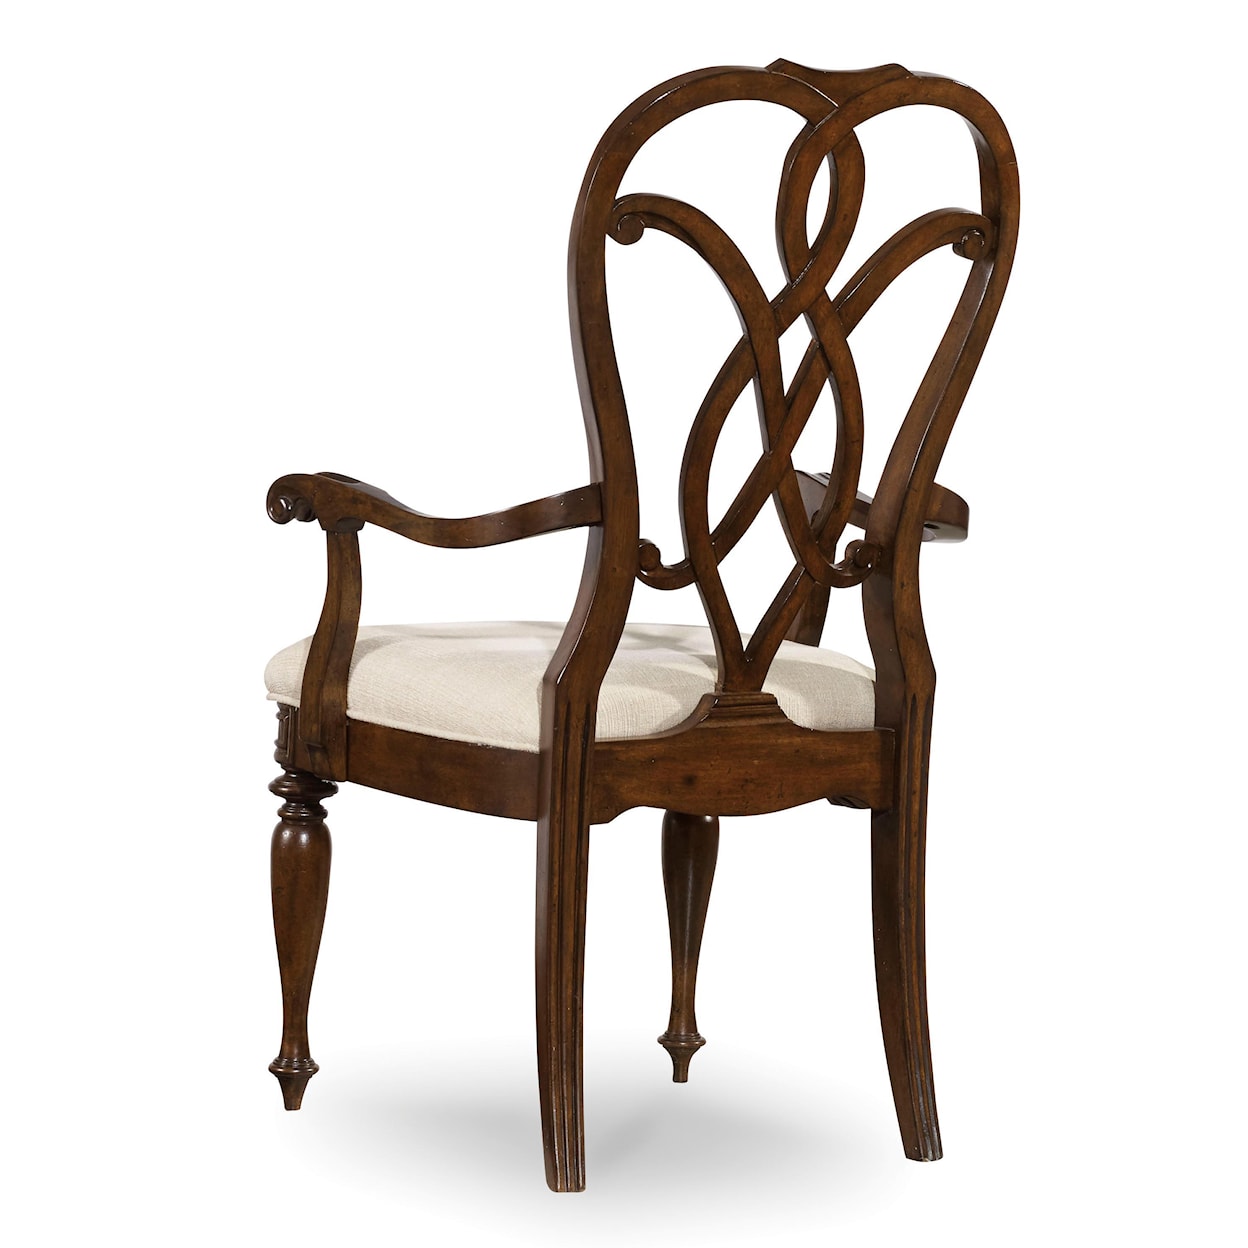 Hooker Furniture Leesburg Splatback Arm Chair